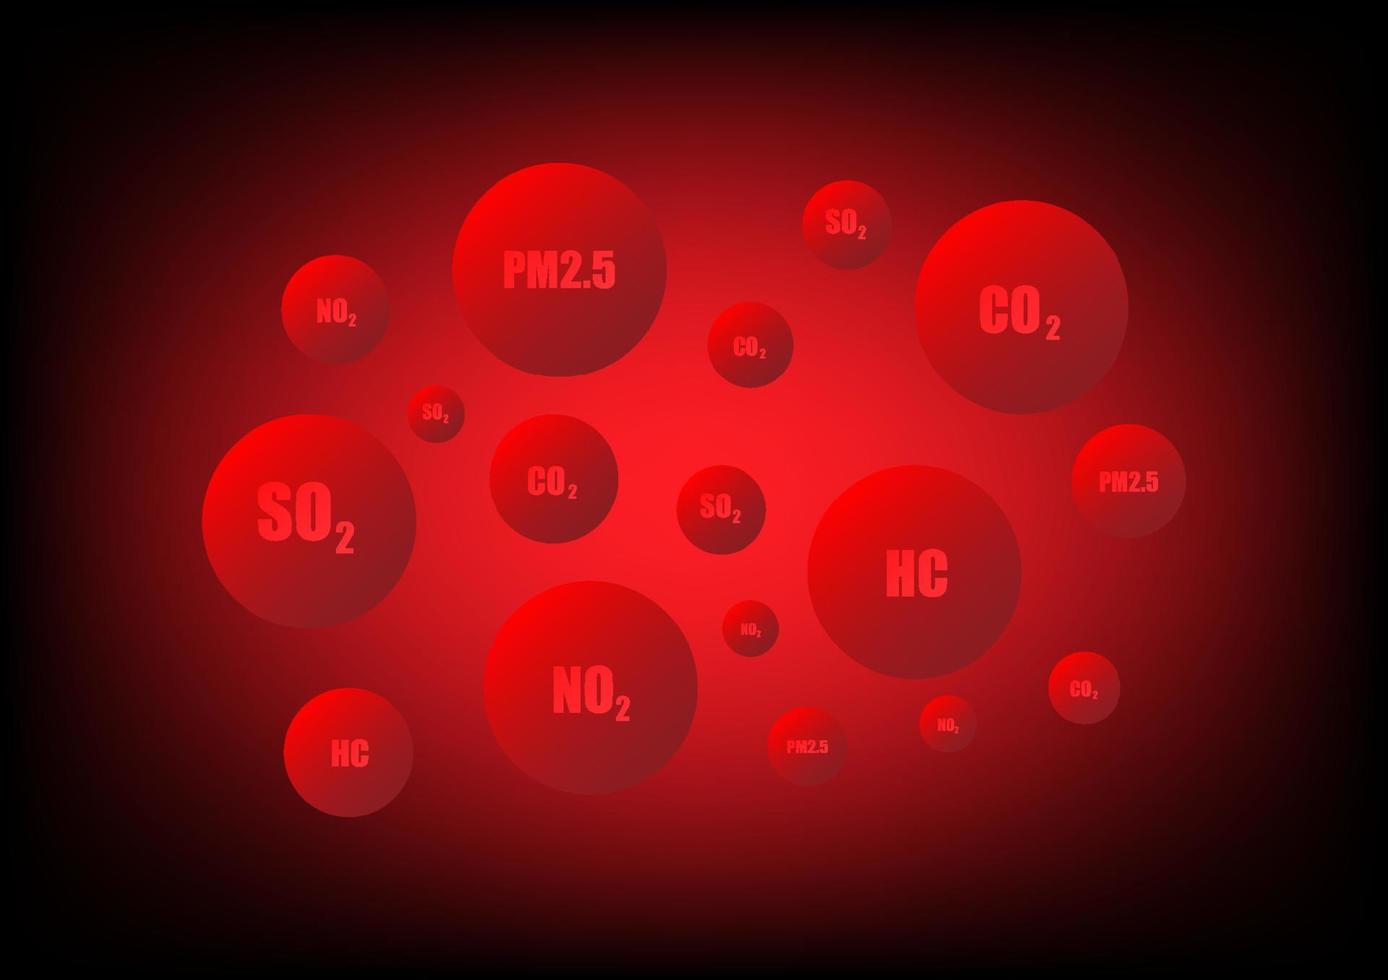 Luft Verschmutzung Konzept. rot Luftblasen mit Text eine solche wie pm2.5, Chemie Substanz, und Kohlenstoff Dioxid auf ein rot Hintergrund. kritisch Umfeld, Klima ändern, ungesund. vektor